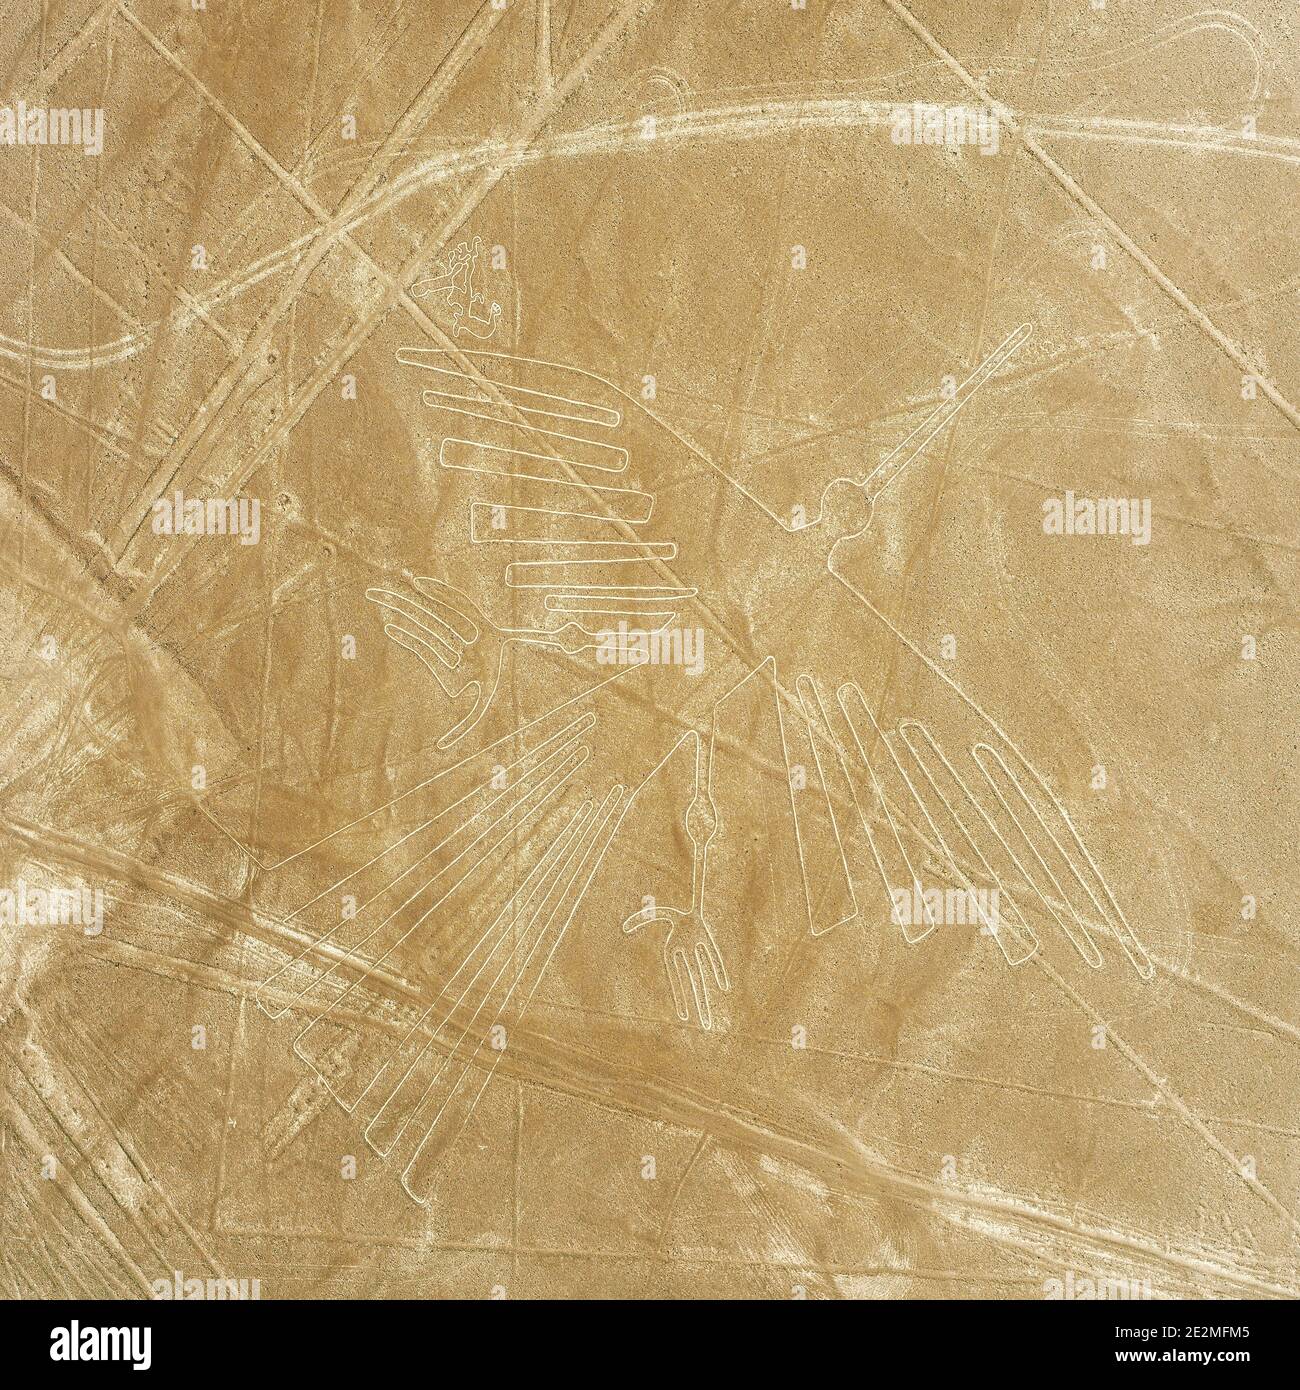 Vue aérienne du géoglyphe condor dessinant dans le désert côtier péruvien connu sous le nom de lignes mystérieuses de Nazca près de la ville de Nazca, au Pérou. Banque D'Images